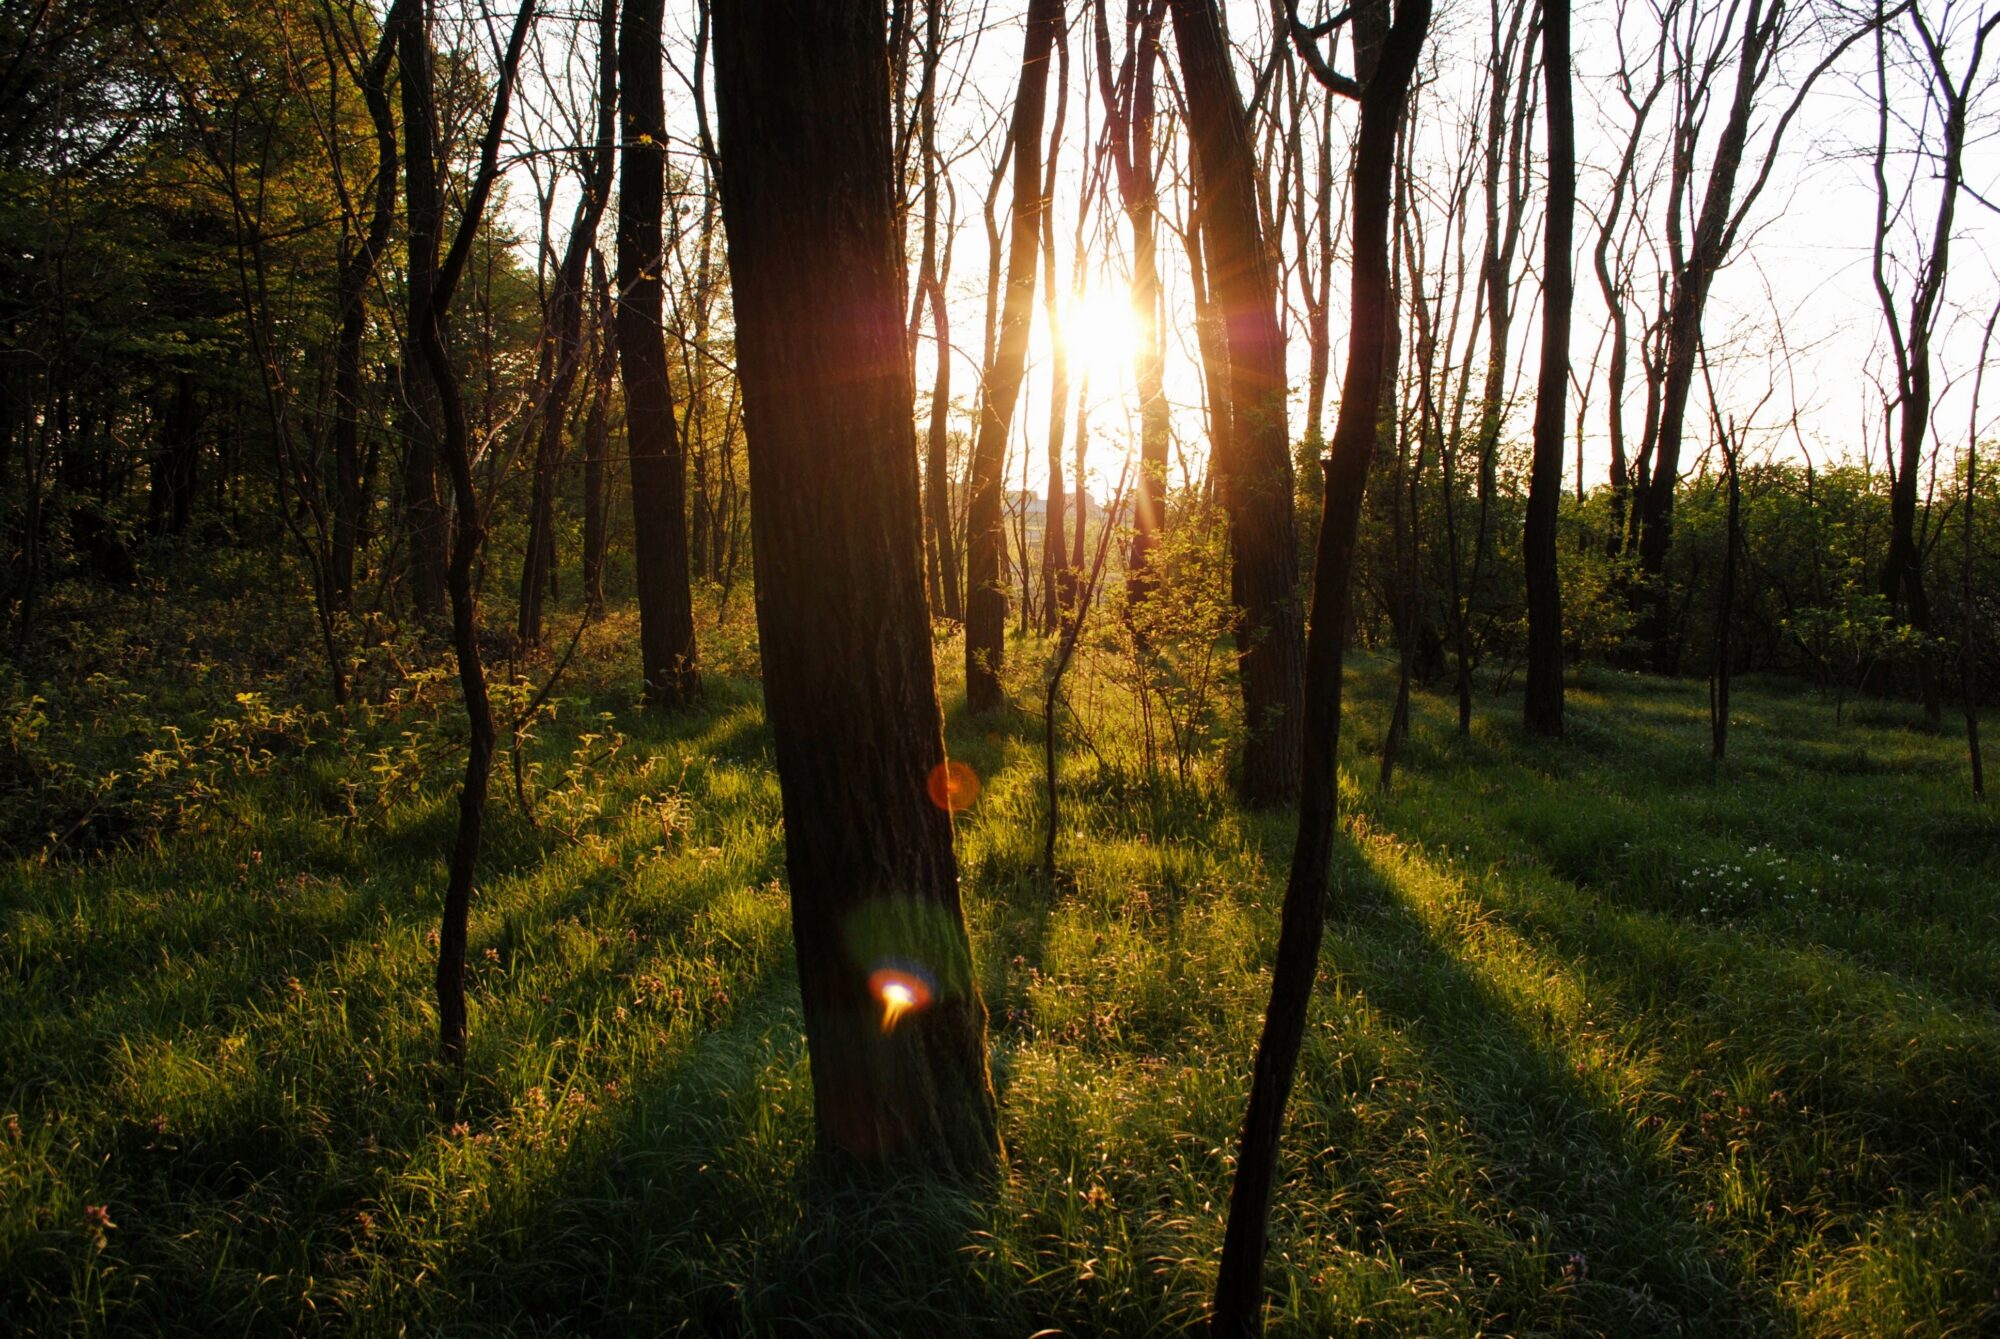 Solen der skinner igennem en lysegrøn skov